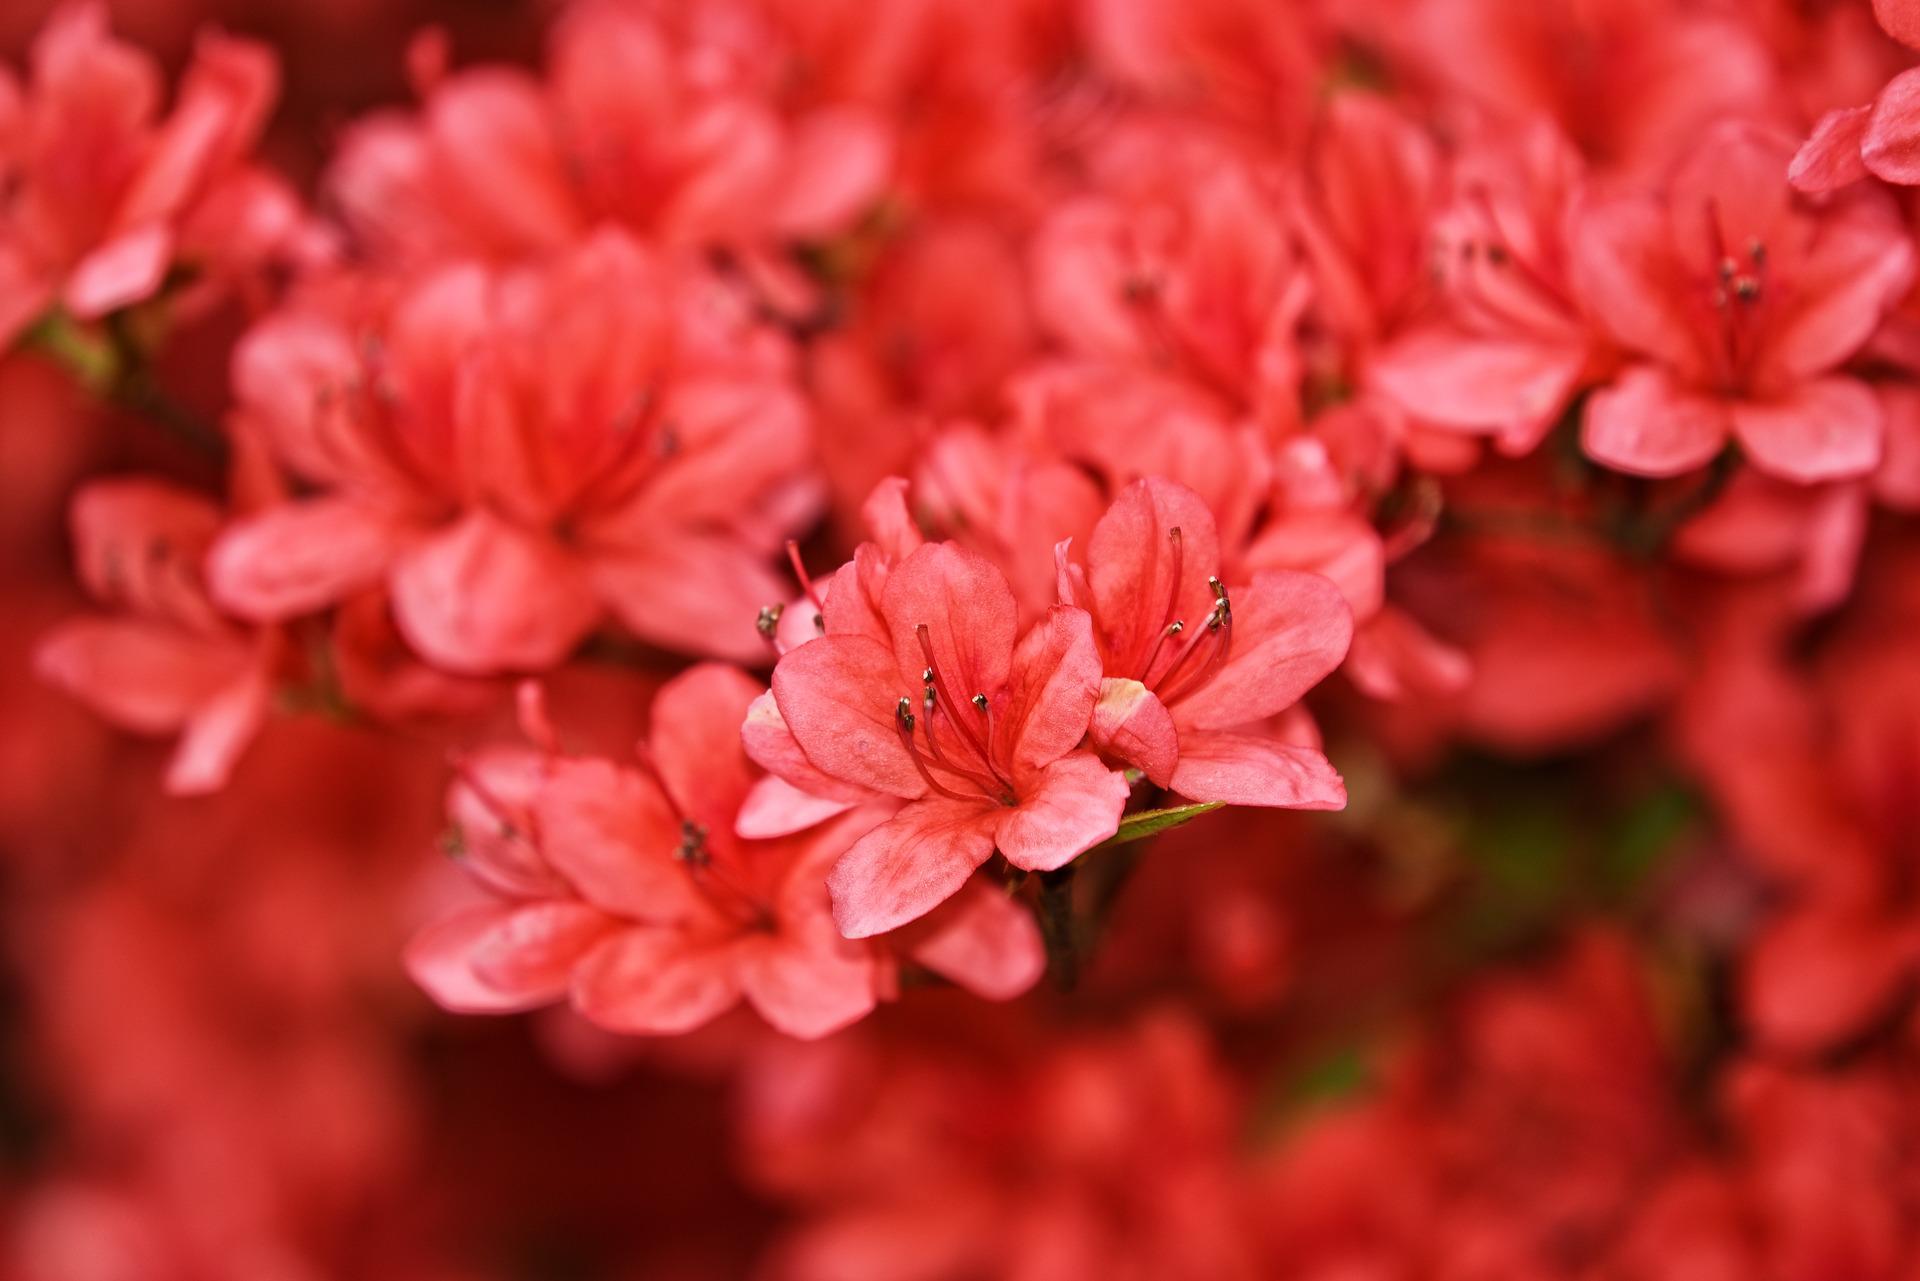 Pink-red azalea petals